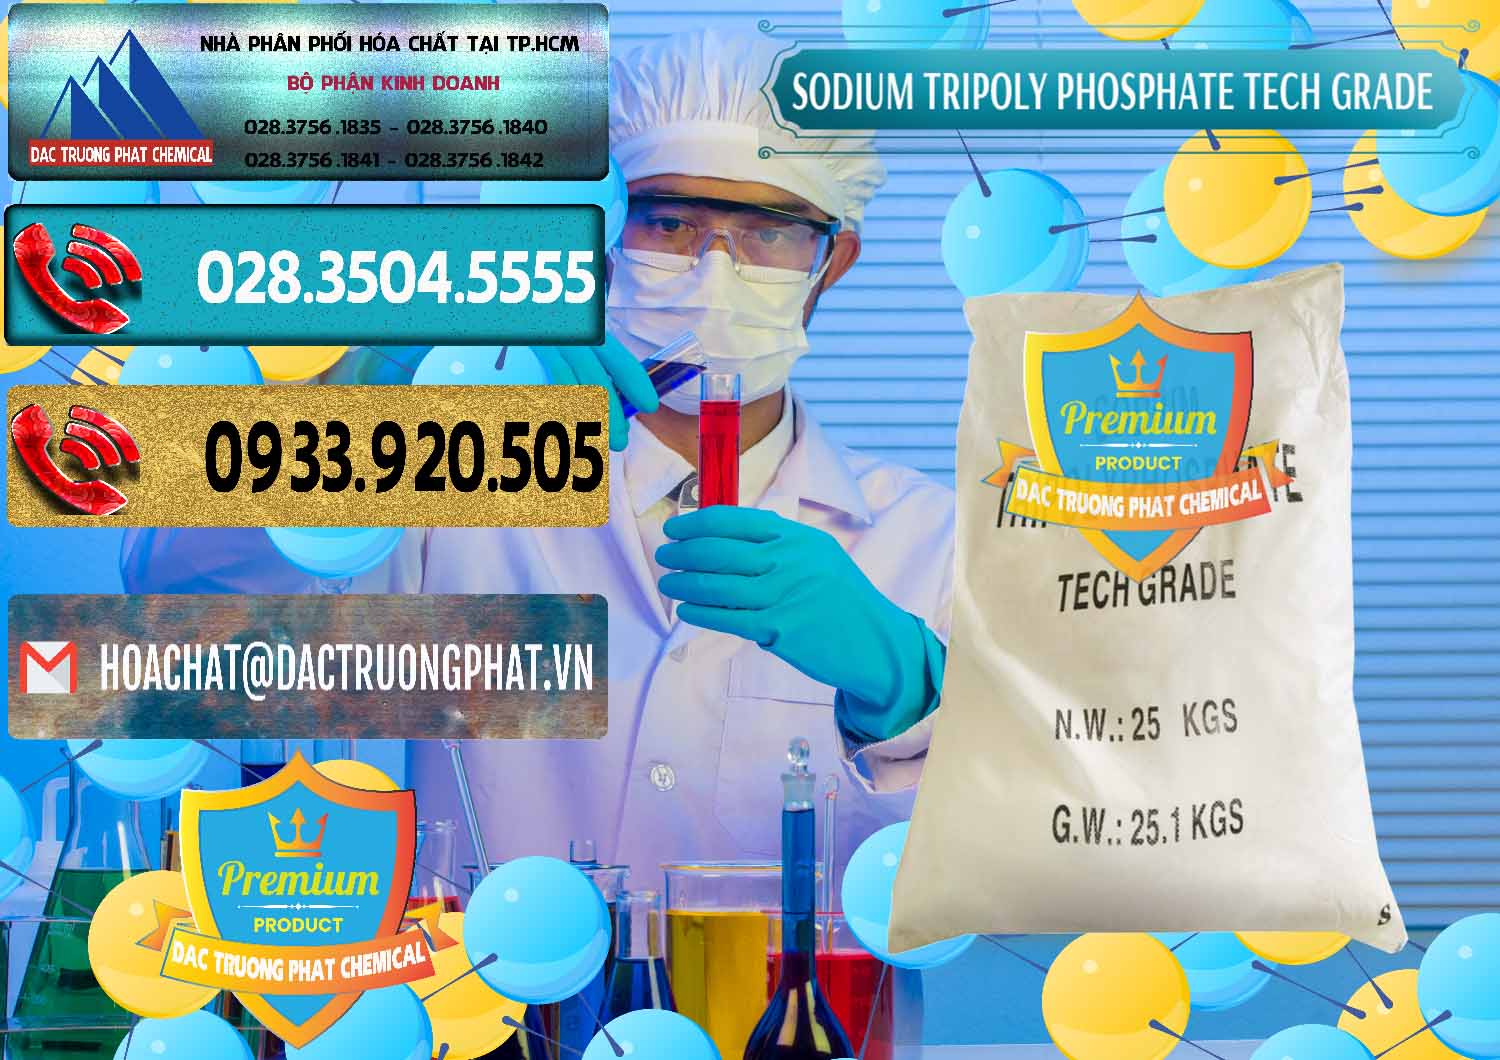 Công ty chuyên bán - cung ứng Sodium Tripoly Phosphate - STPP Tech Grade Trung Quốc China - 0453 - Phân phối _ cung ứng hóa chất tại TP.HCM - hoachatdetnhuom.com